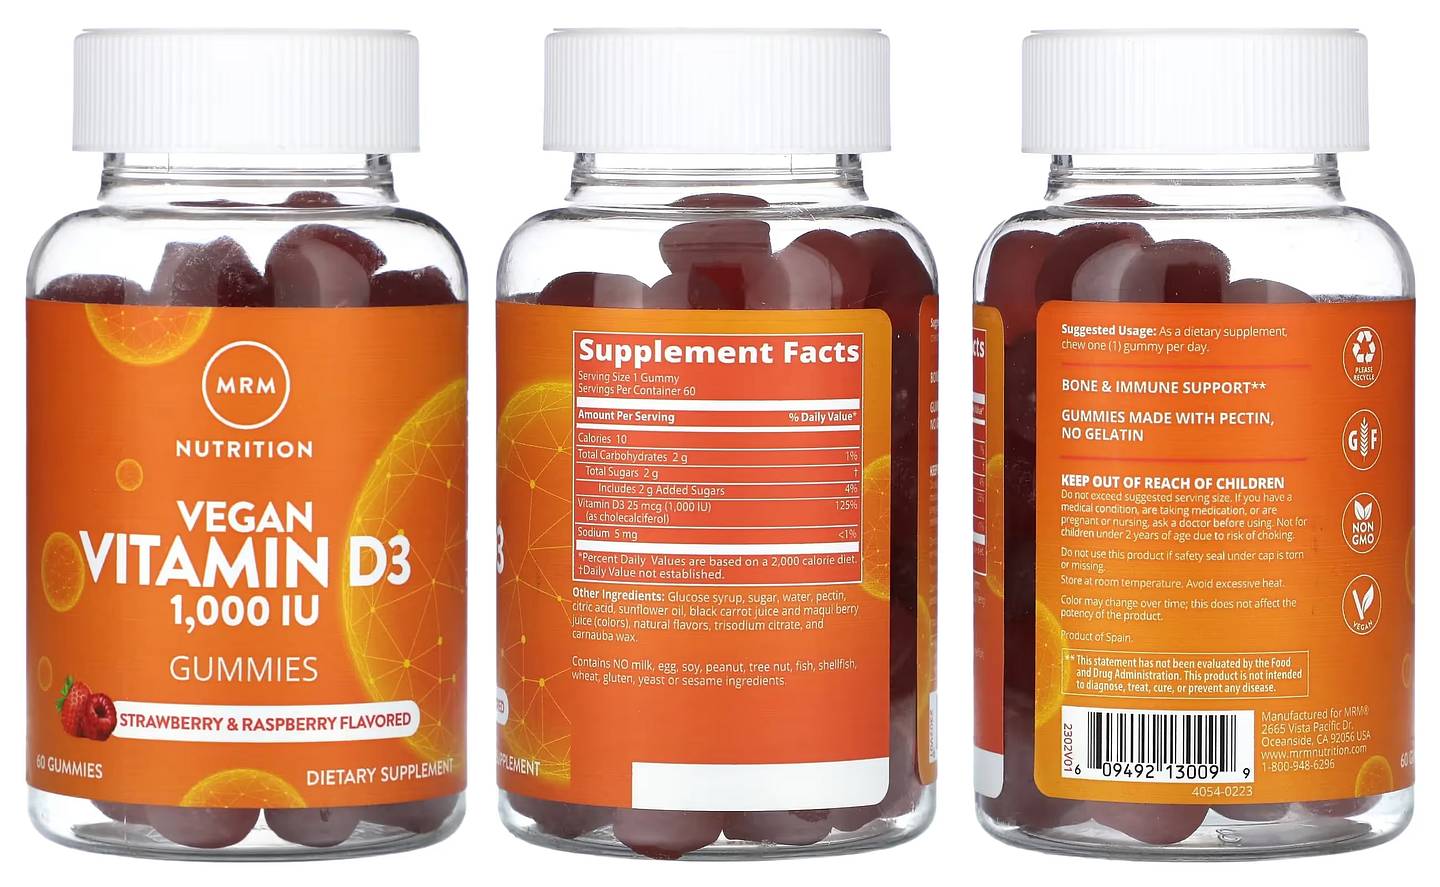 MRM Nutrition, Vegan Vitamin D3 Gummies packaging